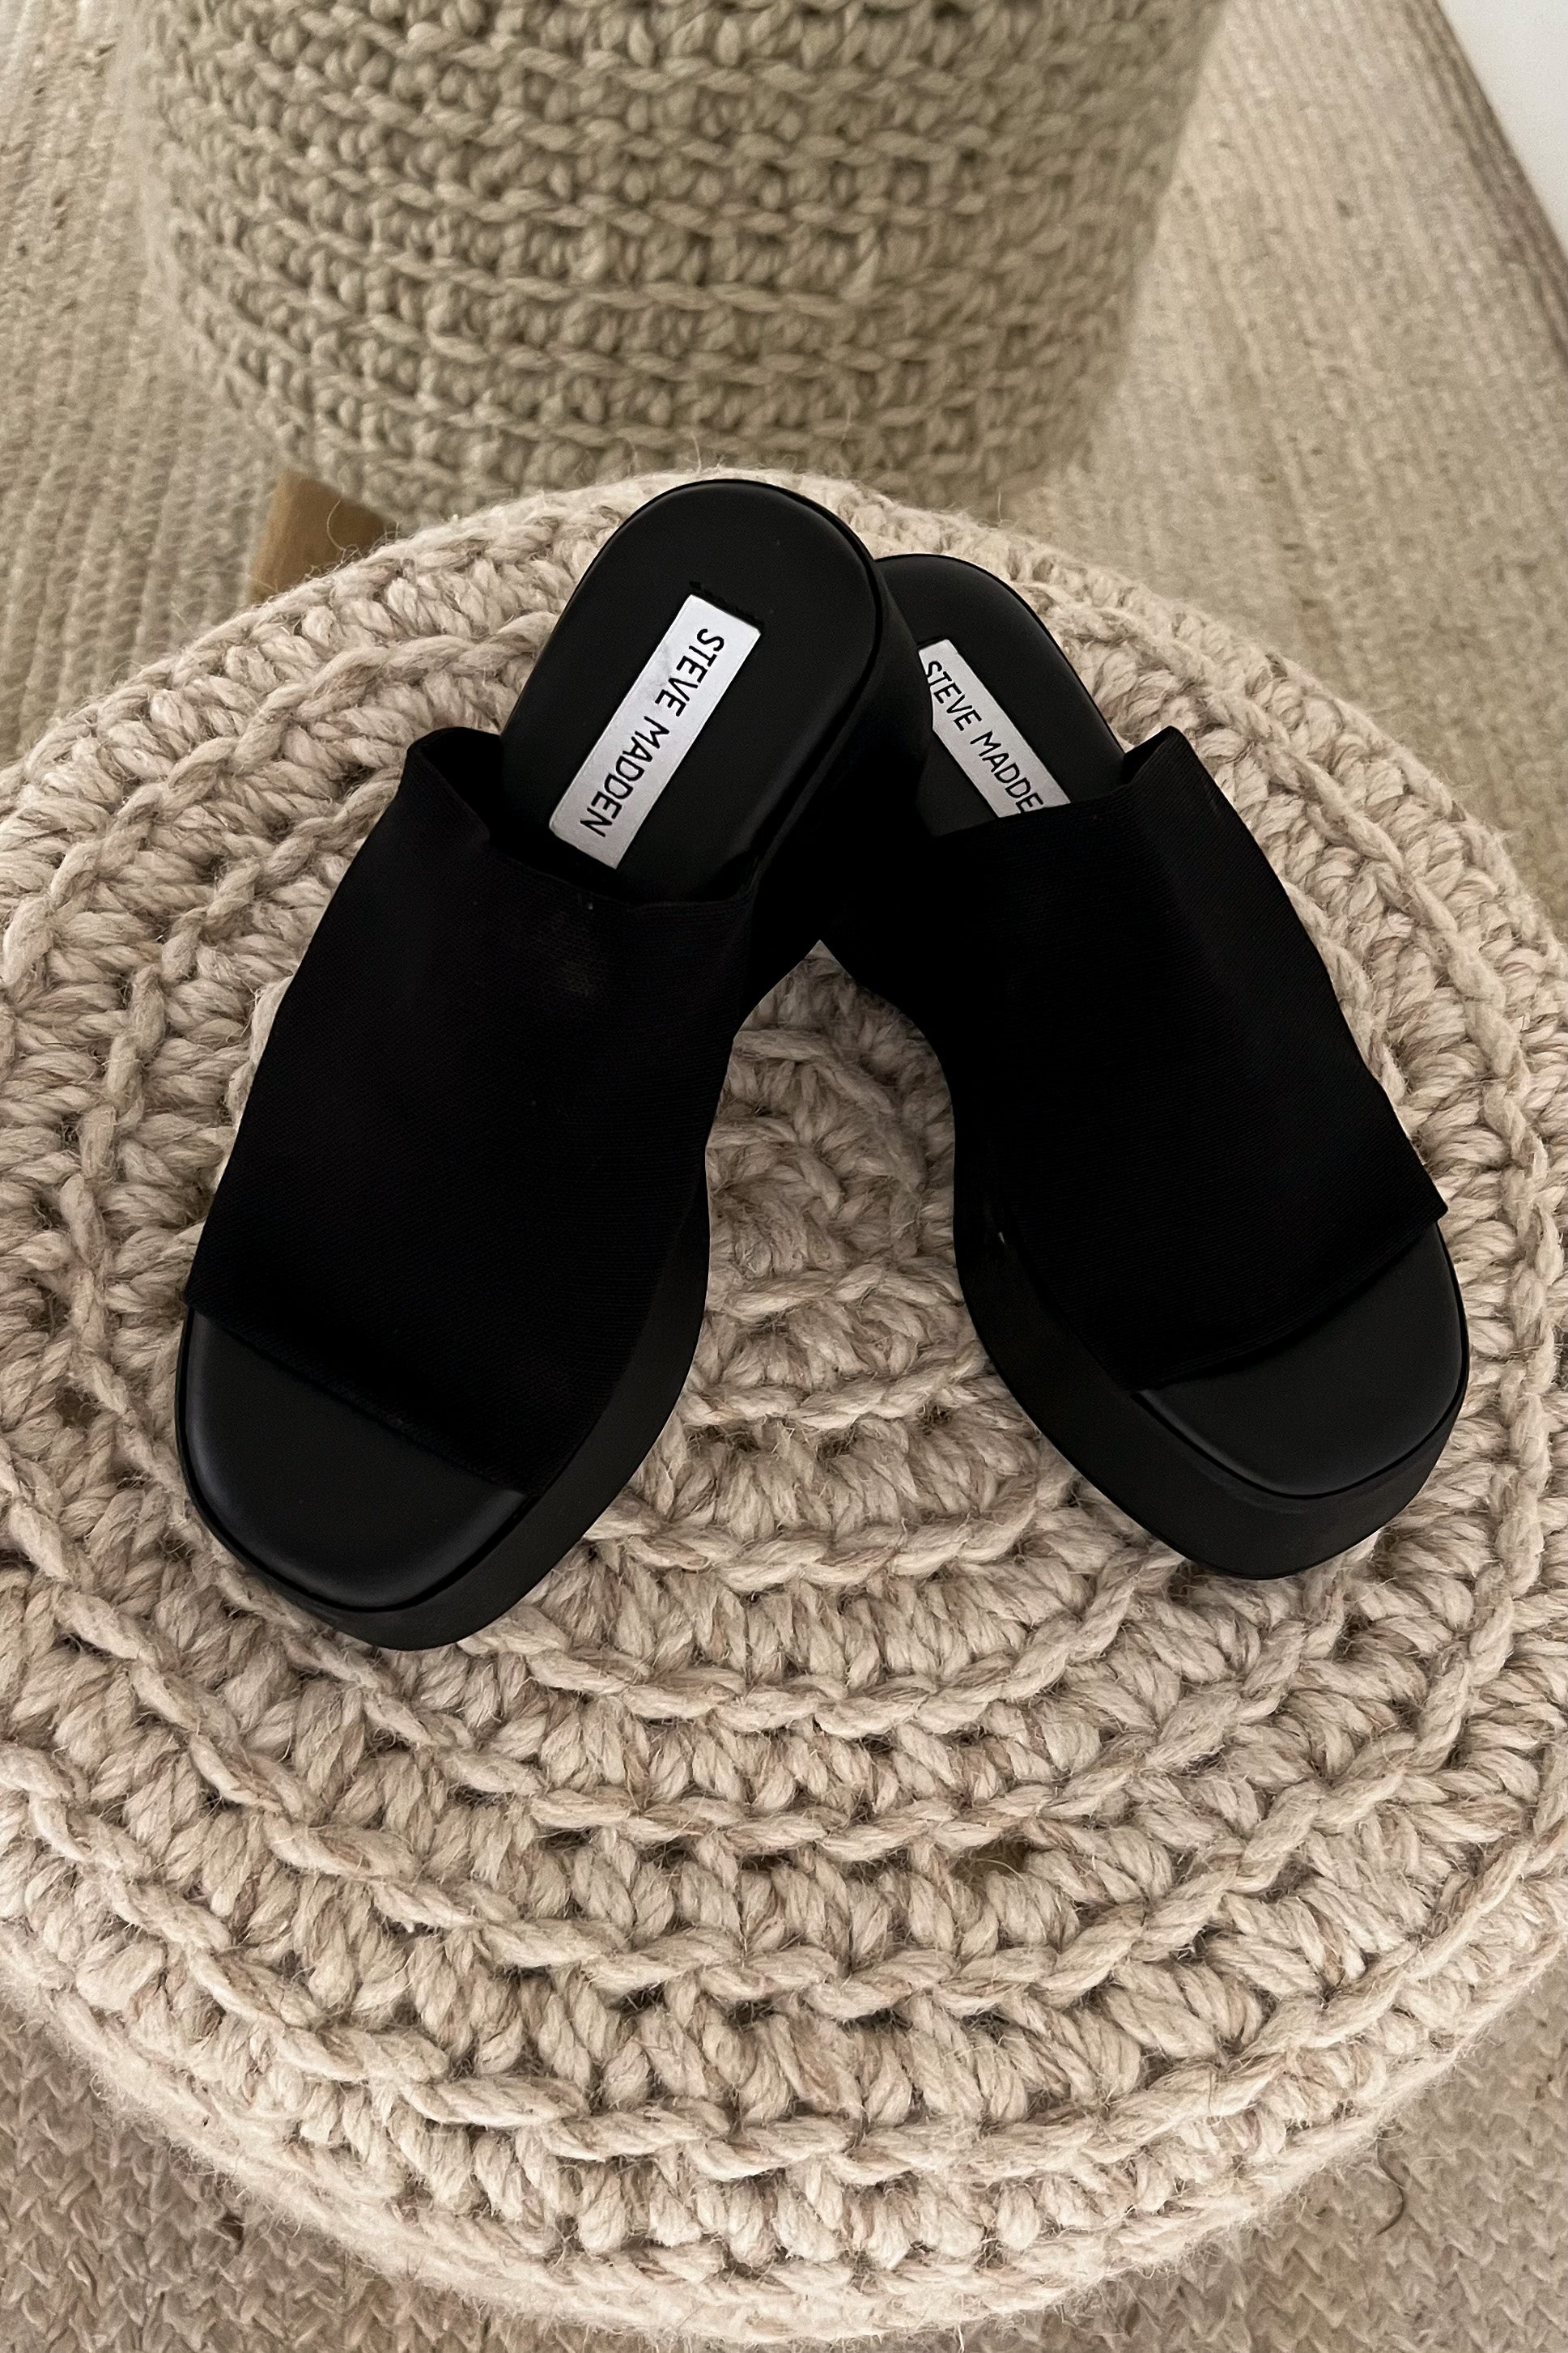 Steve Madden Women's Leather Slide Sandal | Costco